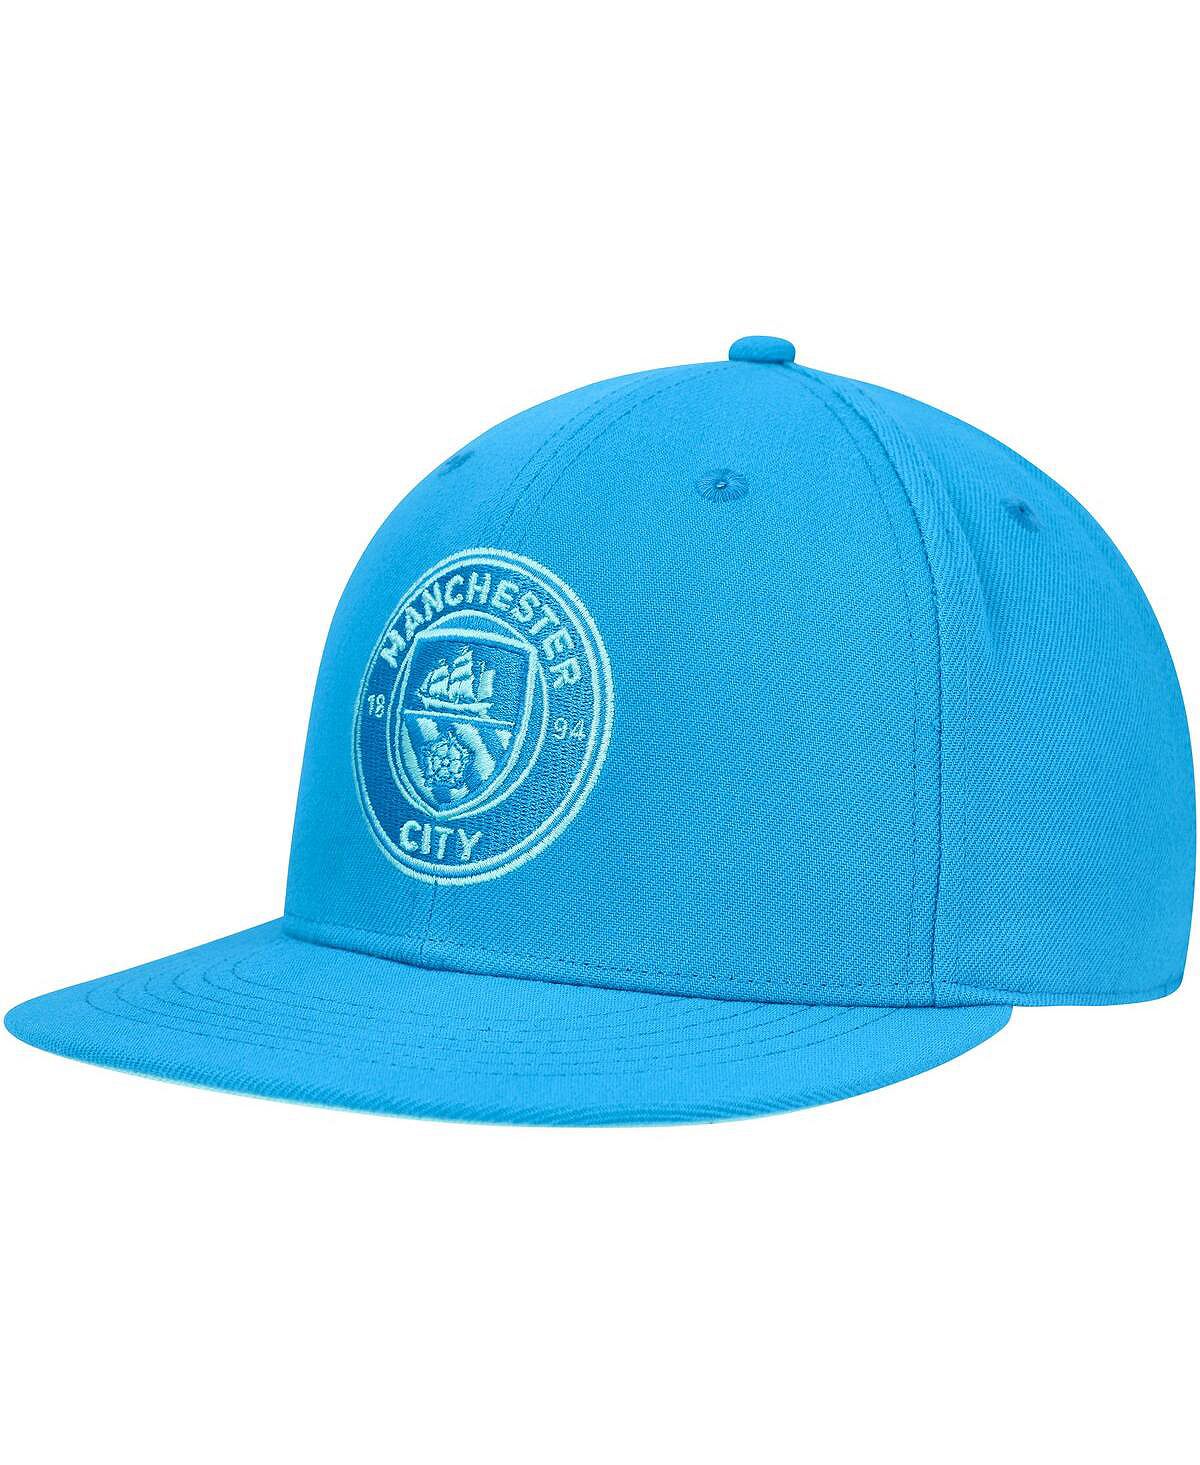 футболка меч dog s fan electric blue Мужская кепка Snapback небесно-голубого цвета Manchester City Palette Palette Fan Ink